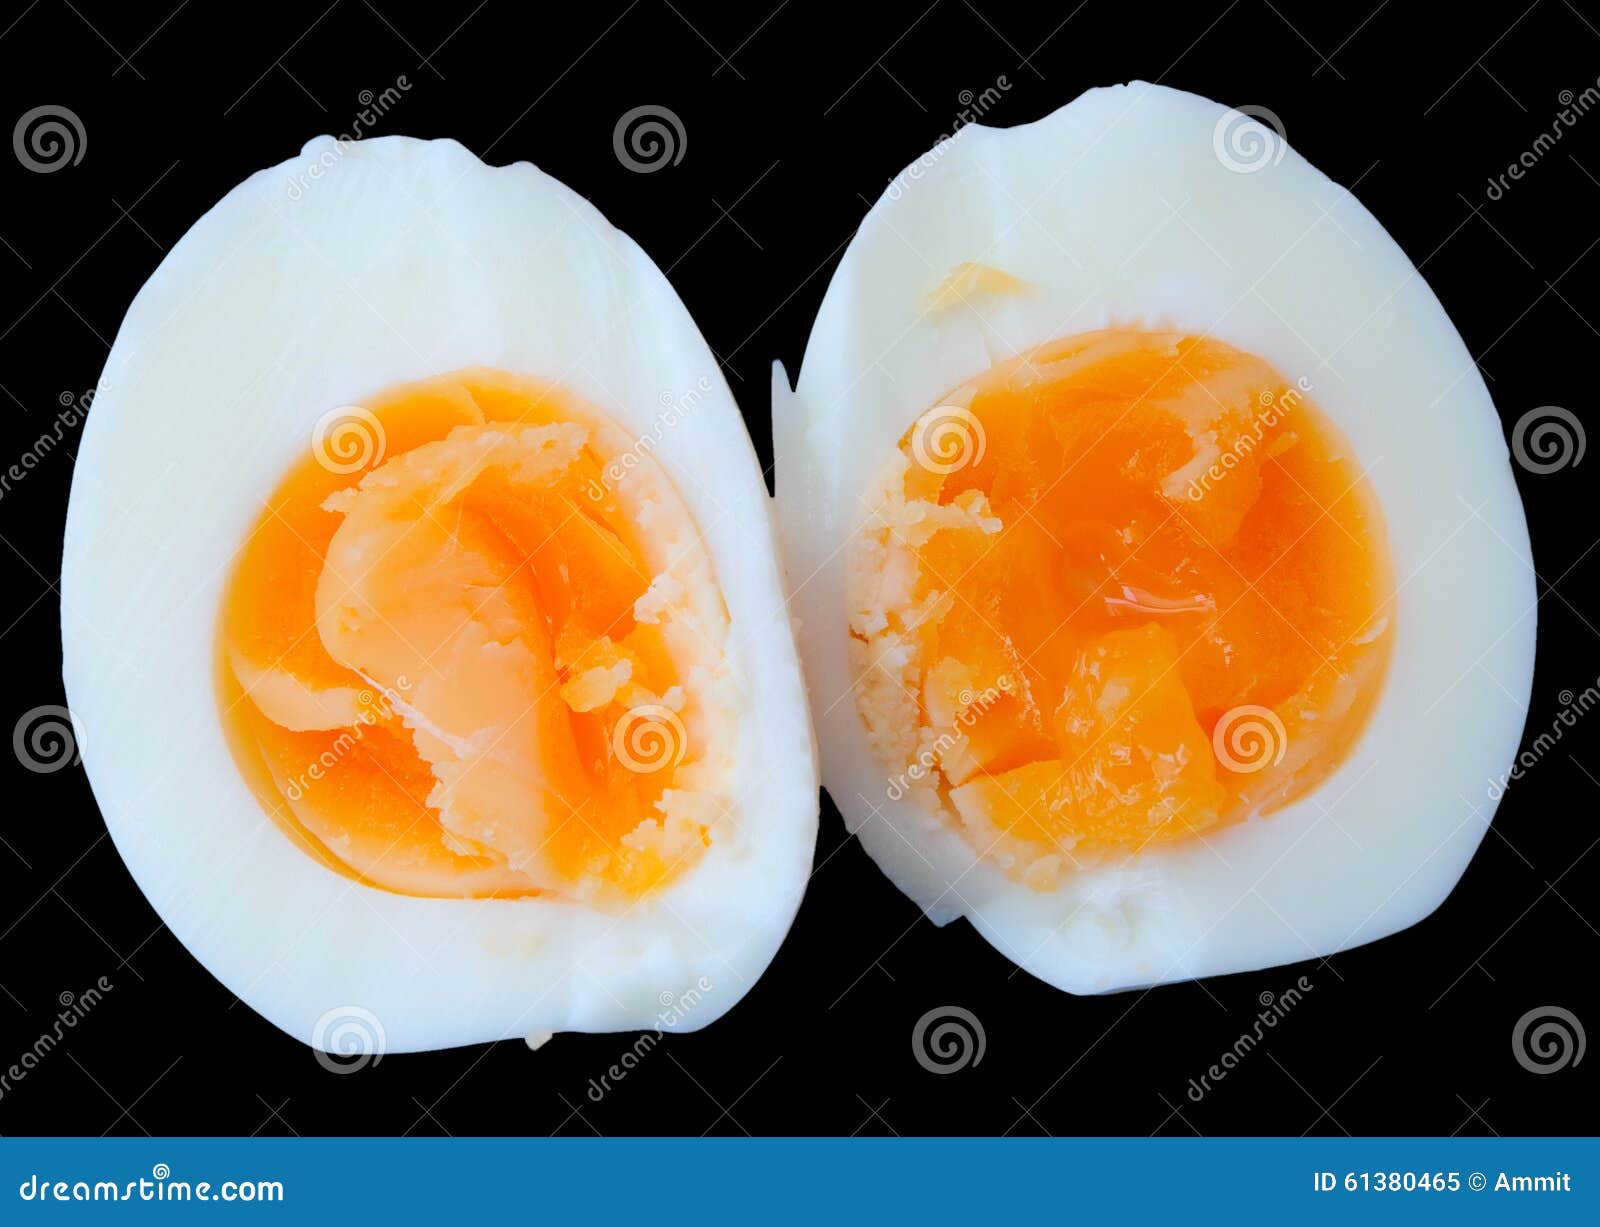 Разбей яйцо 2. Яйцо дольками. Яйца ломтиками. Разрезанное вареное яйцо. Кусочки с яйцом.